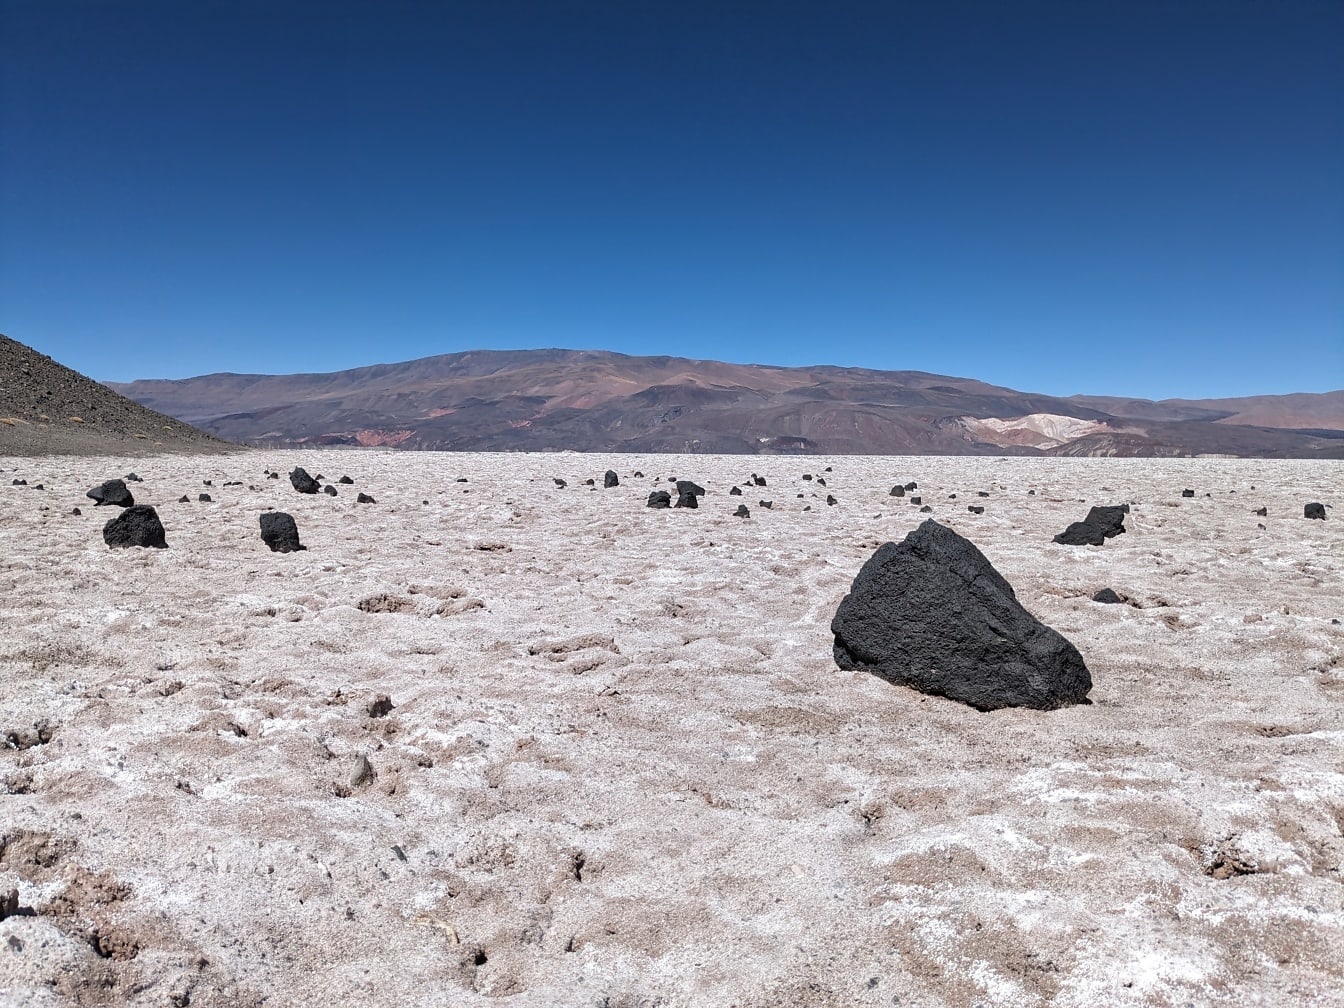 Paisagem rochosa com rochas vulcânicas negras sobre os depósitos sedimentares de sal branco no deserto